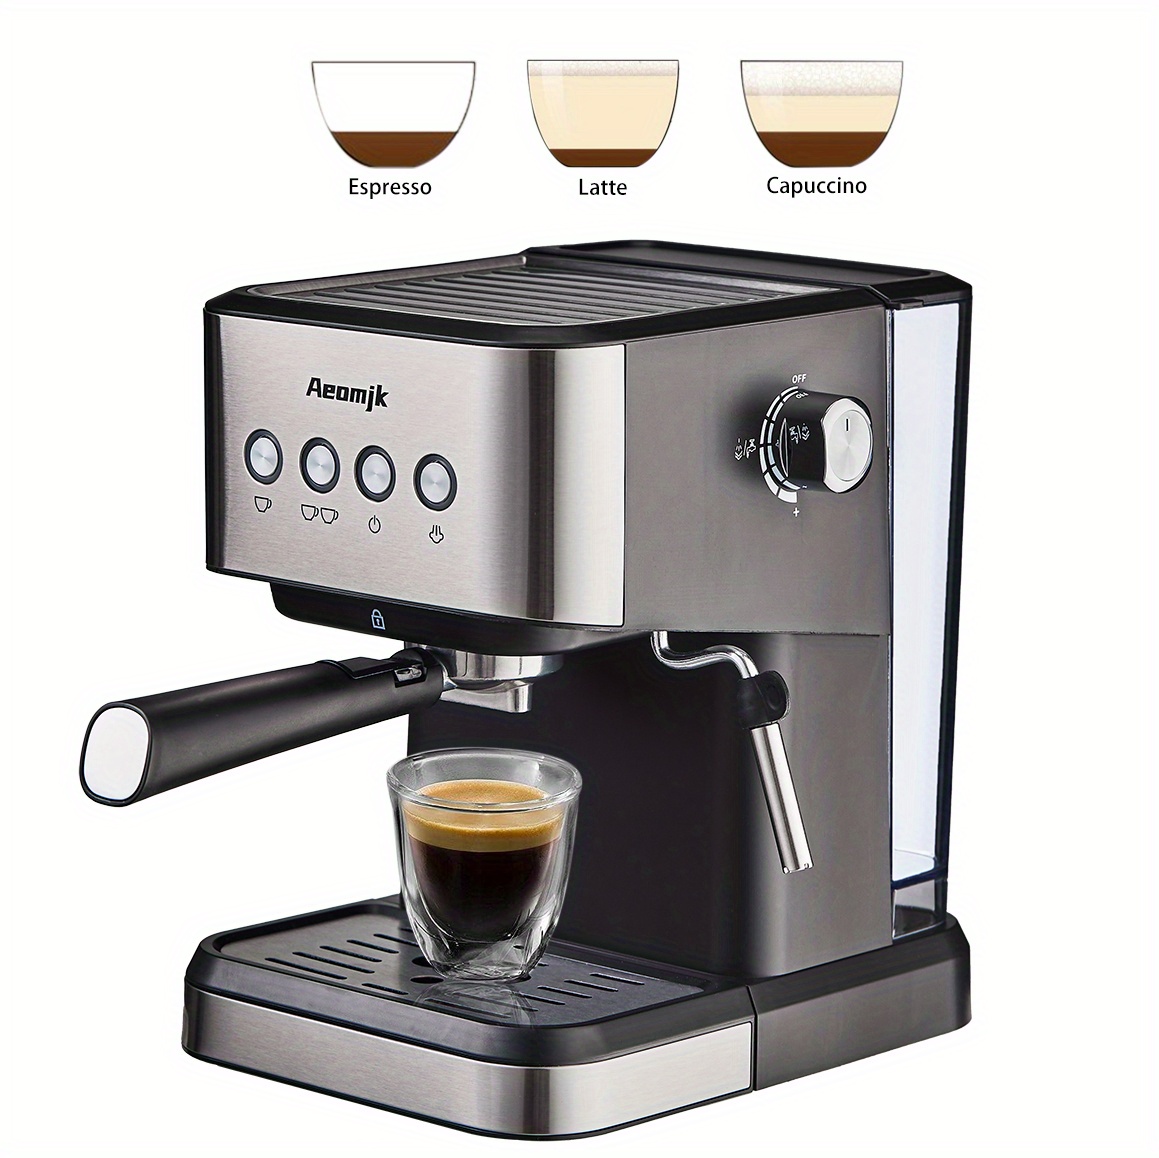 SUMSATY Máquina de café expreso de 20 bares, cafetera espresso retro con  espumador de leche para capuchino, café con leche, macchiato, tanque de  agua